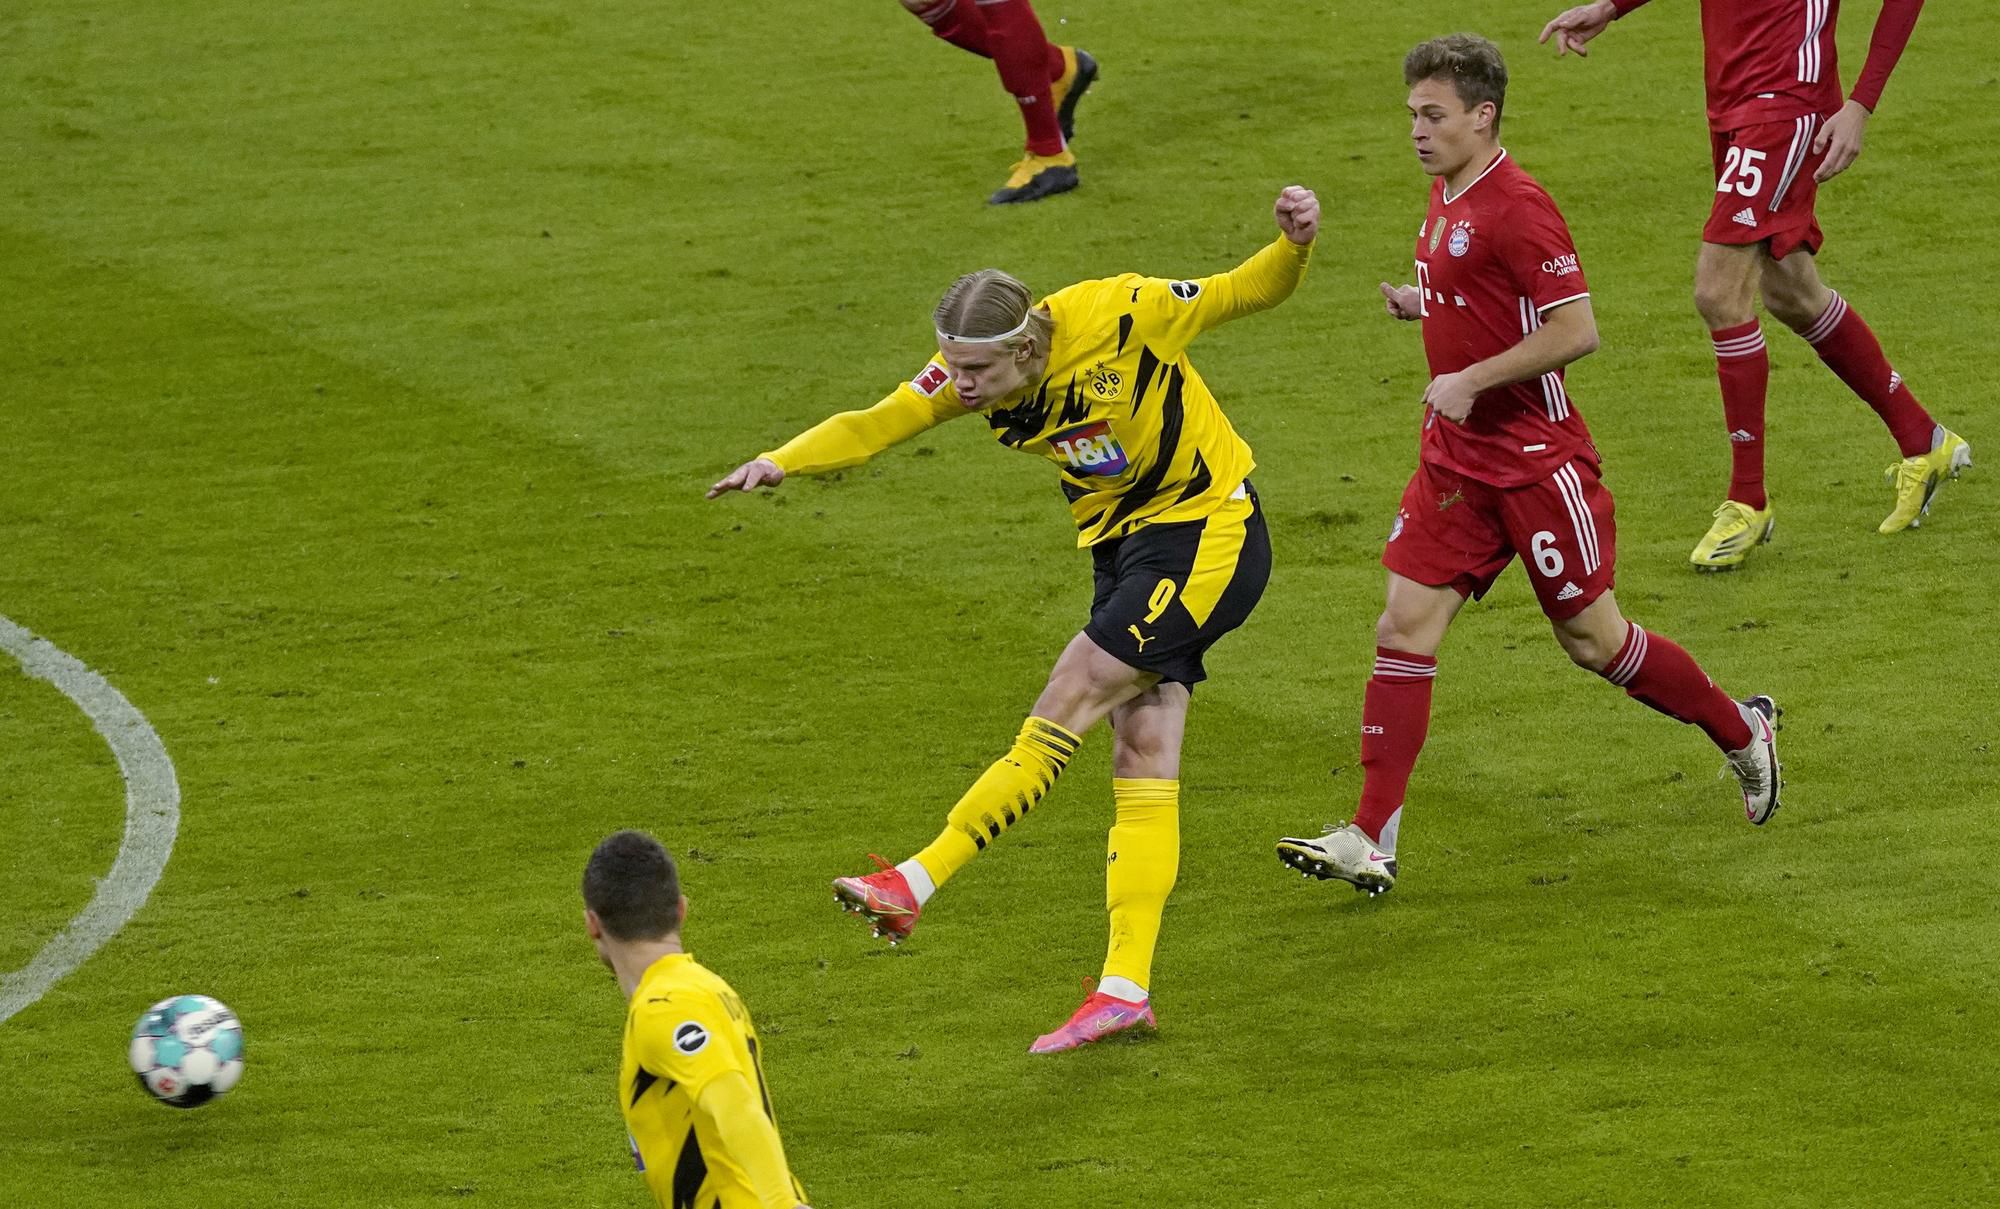 Erling Haaland (Borussia Dortmund) strieľa úvdoný gól do siete Bayernu Mníchov